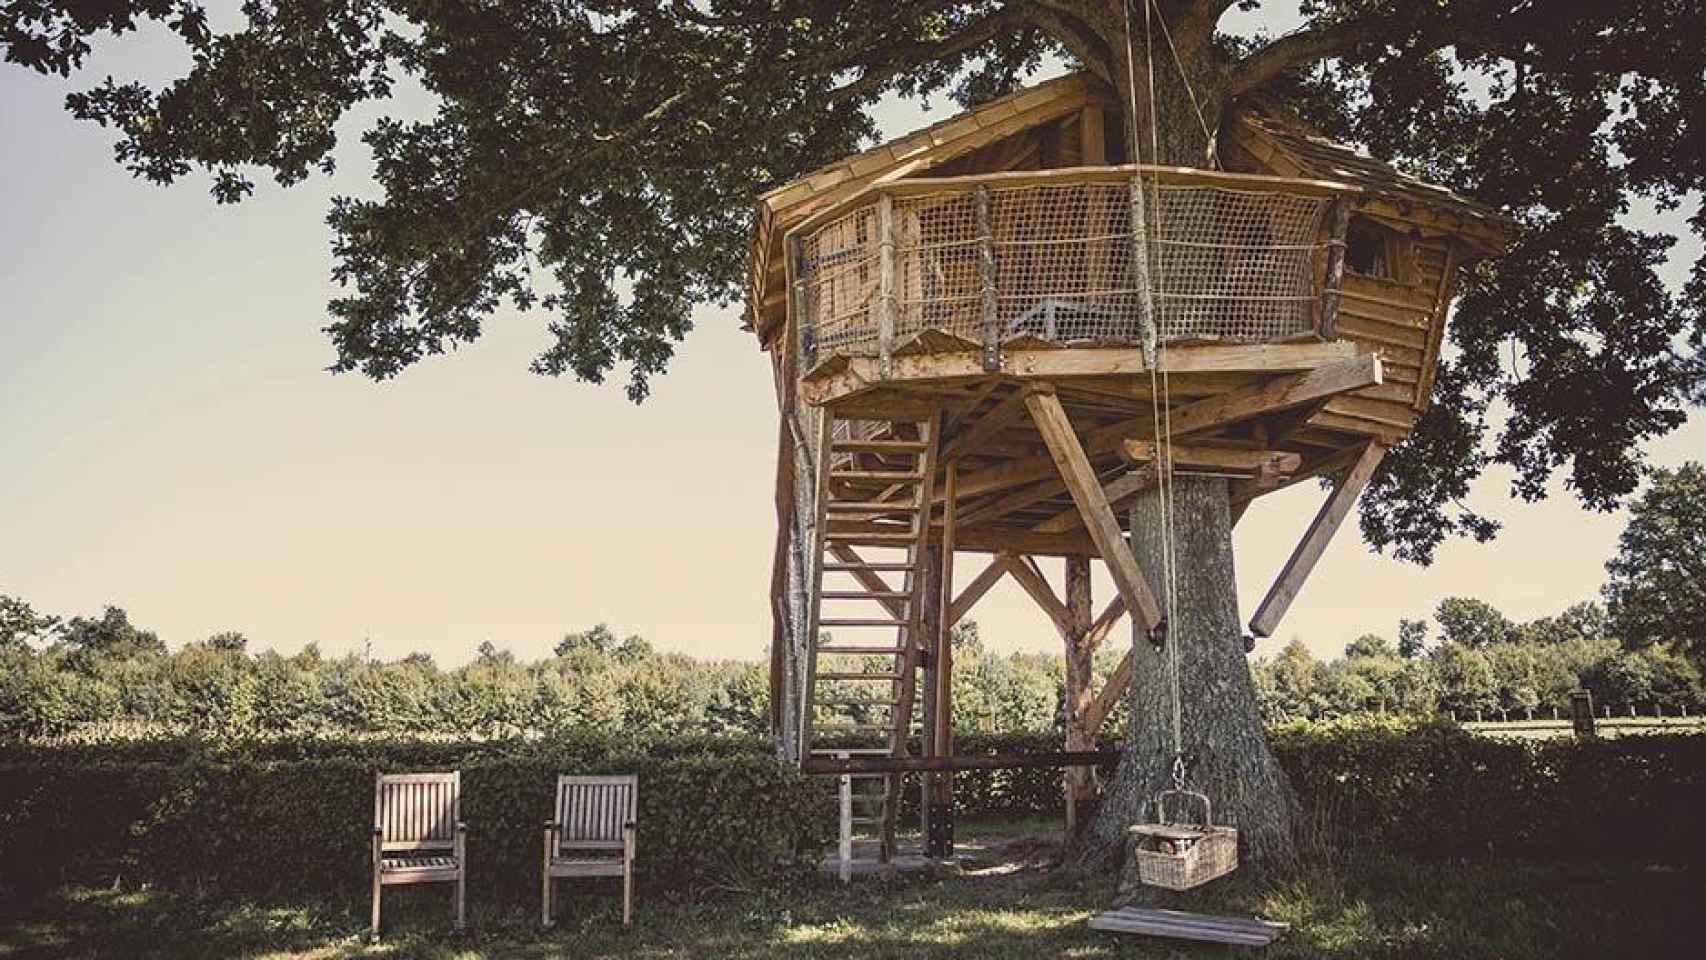 Casa en un árbol, uno de los alojamientos alternativos que están de moda / BOOKING